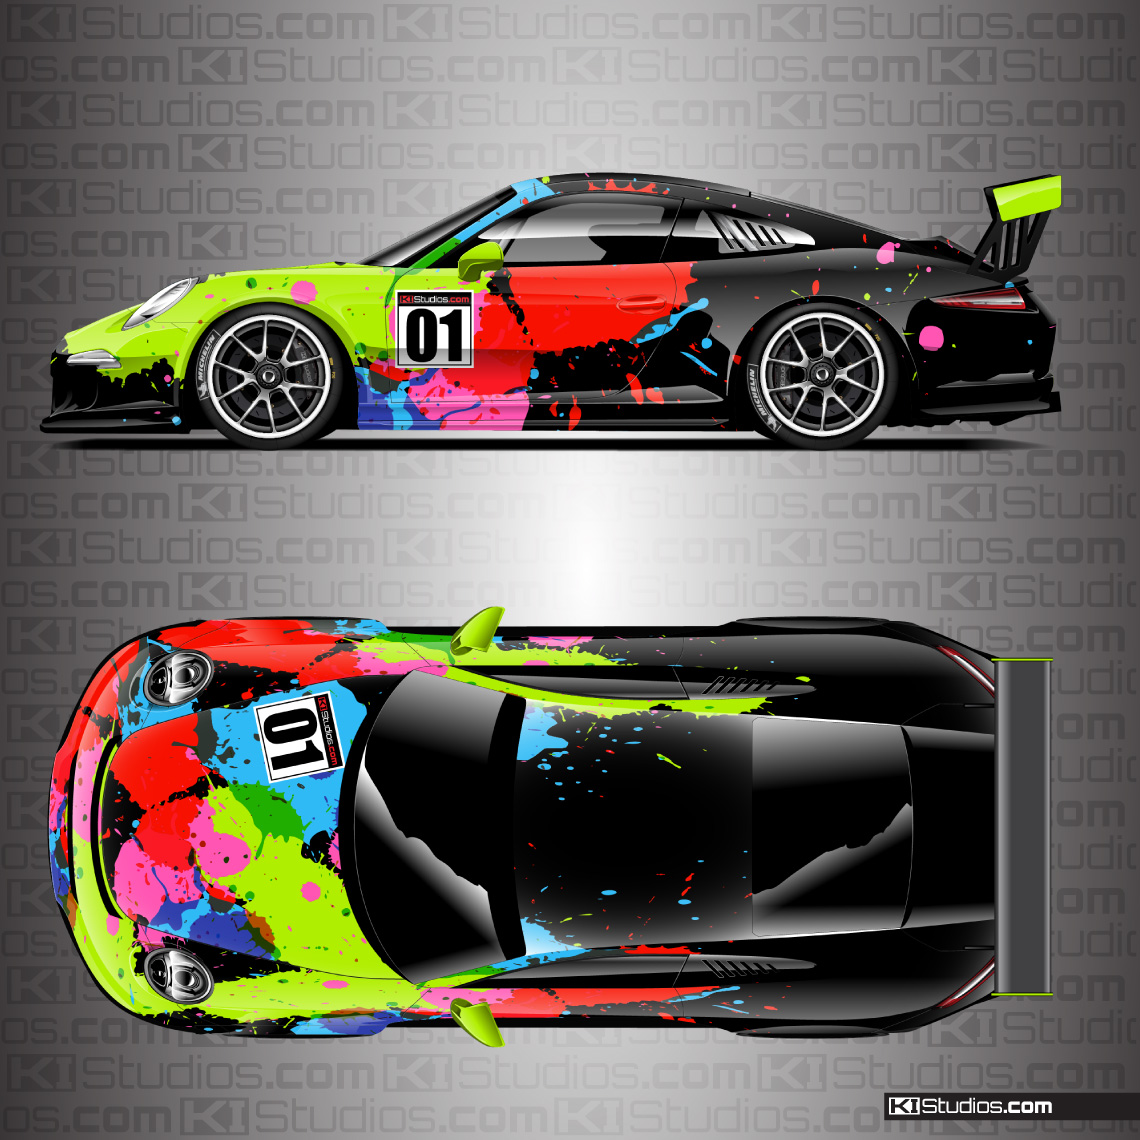 Porsche 911 Race Car Livery Wrap - KI Studios